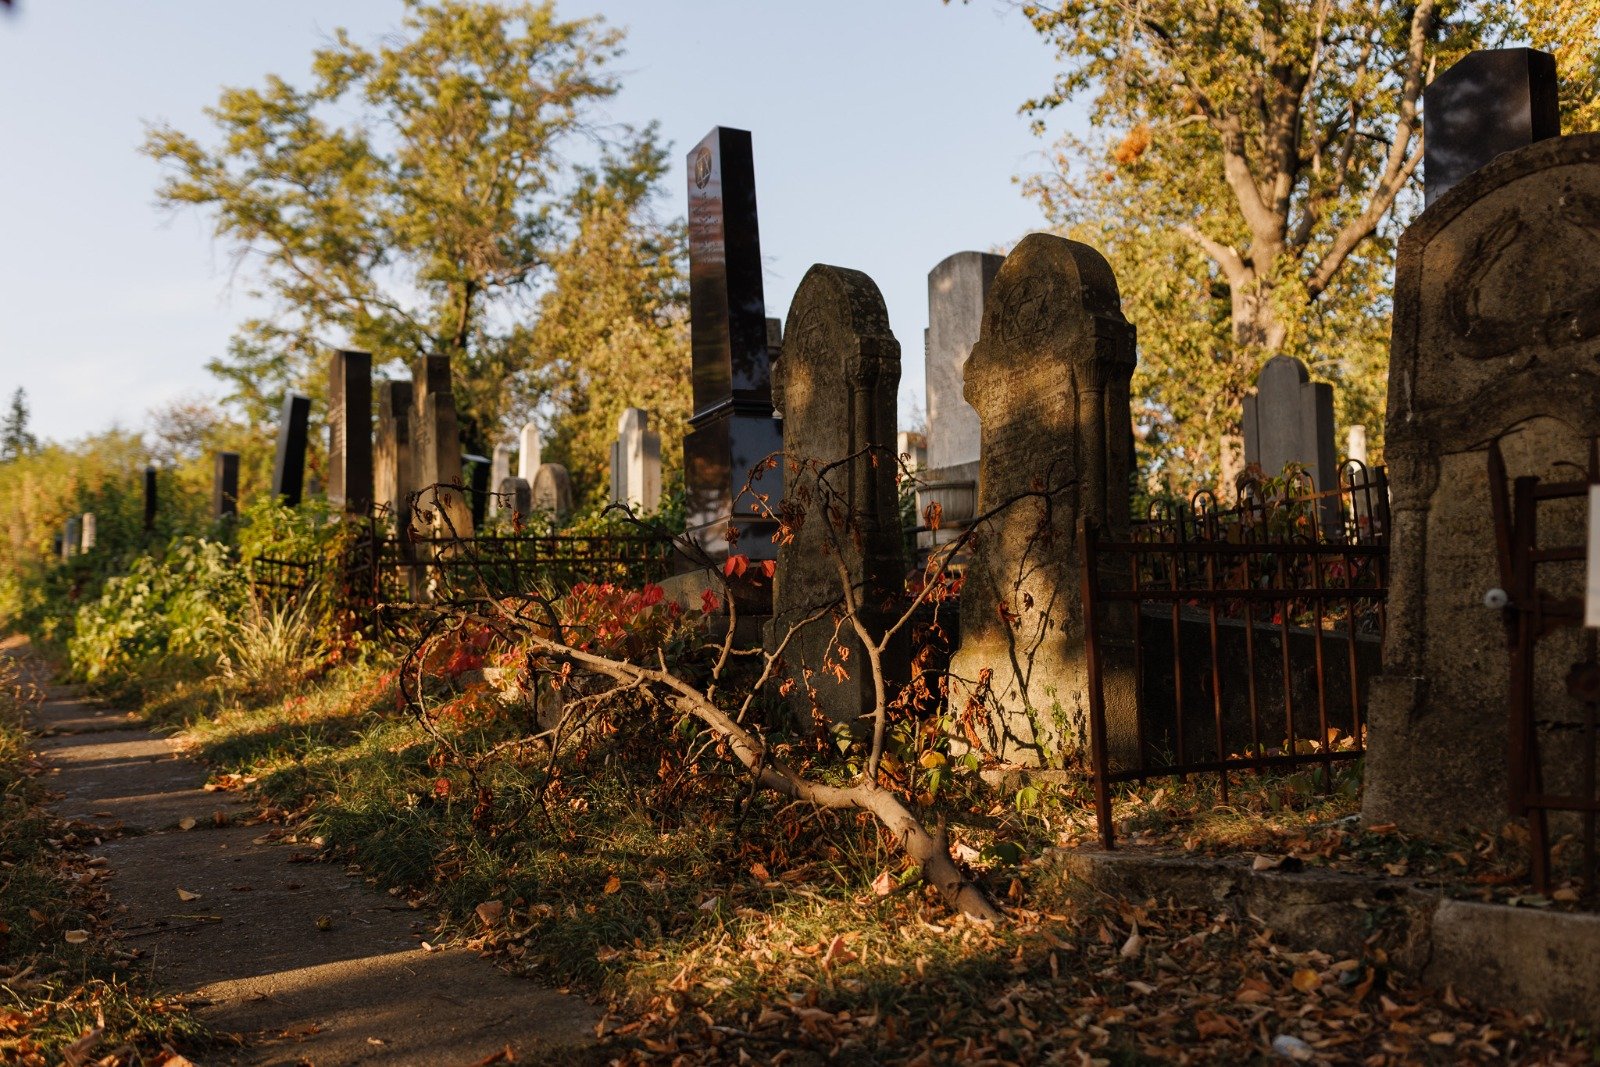  Expoziție FOTO: Cimitirul evreiesc din Iași, în obiectivul fotografului Alexandru Saru